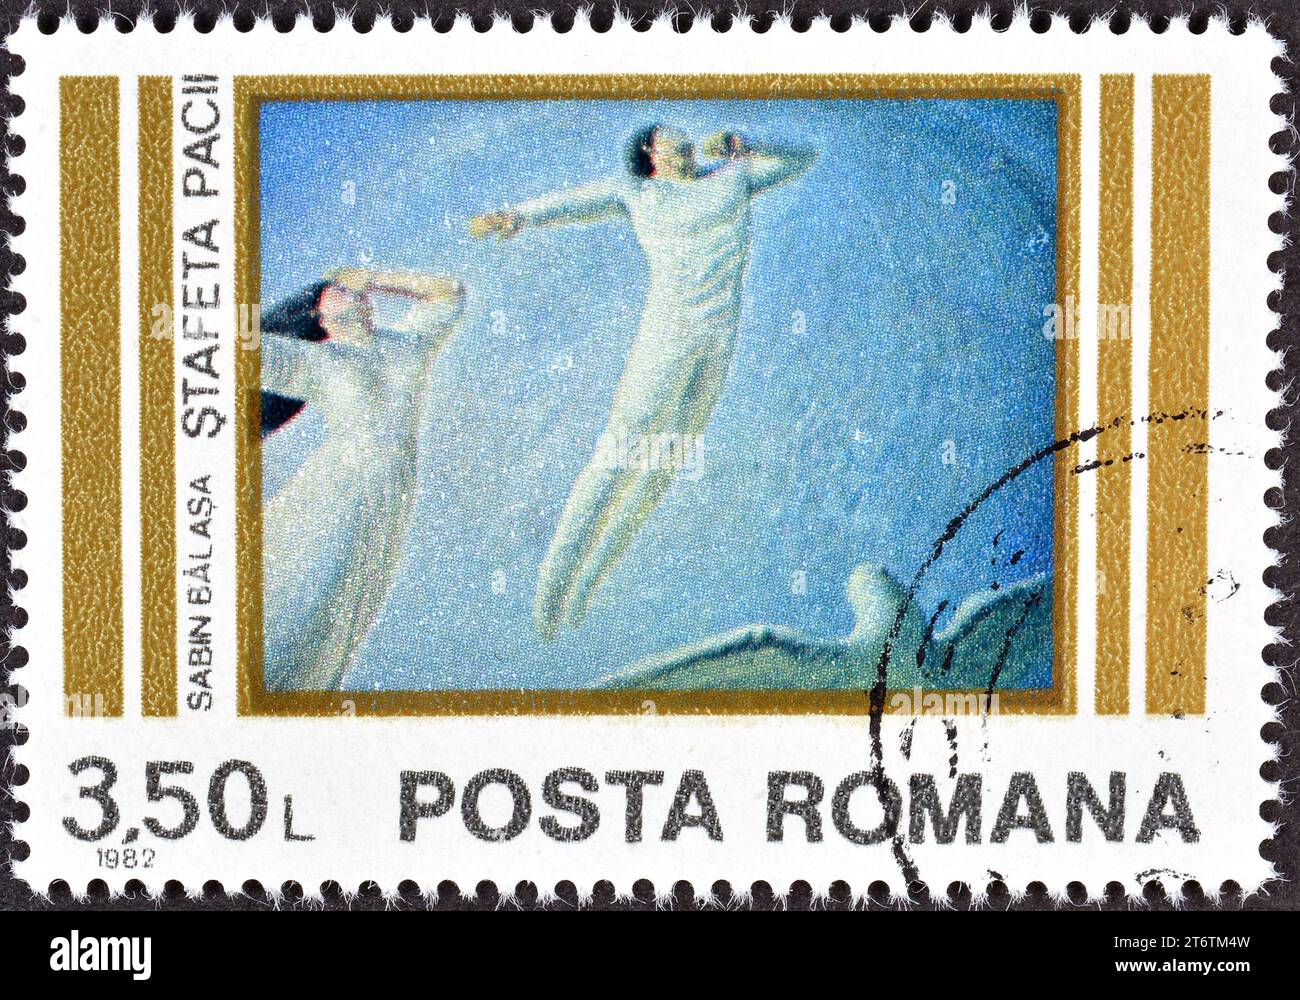 Timbre-poste annulé imprimé par la Roumanie, qui montre le tableau Peace Relay de Sabin Bălașa, vers 1982 Banque D'Images